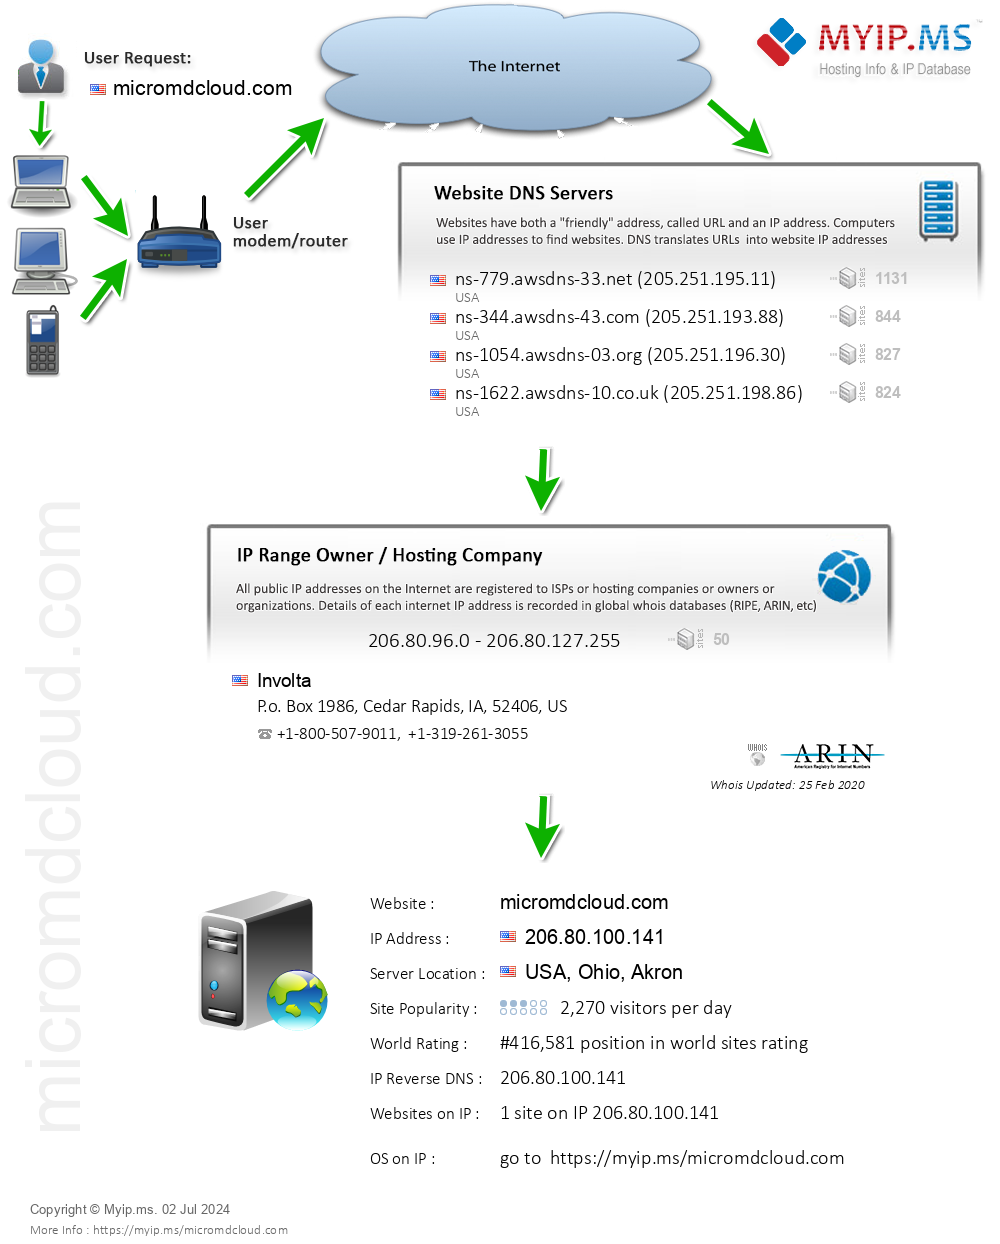 Micromdcloud.com - Website Hosting Visual IP Diagram